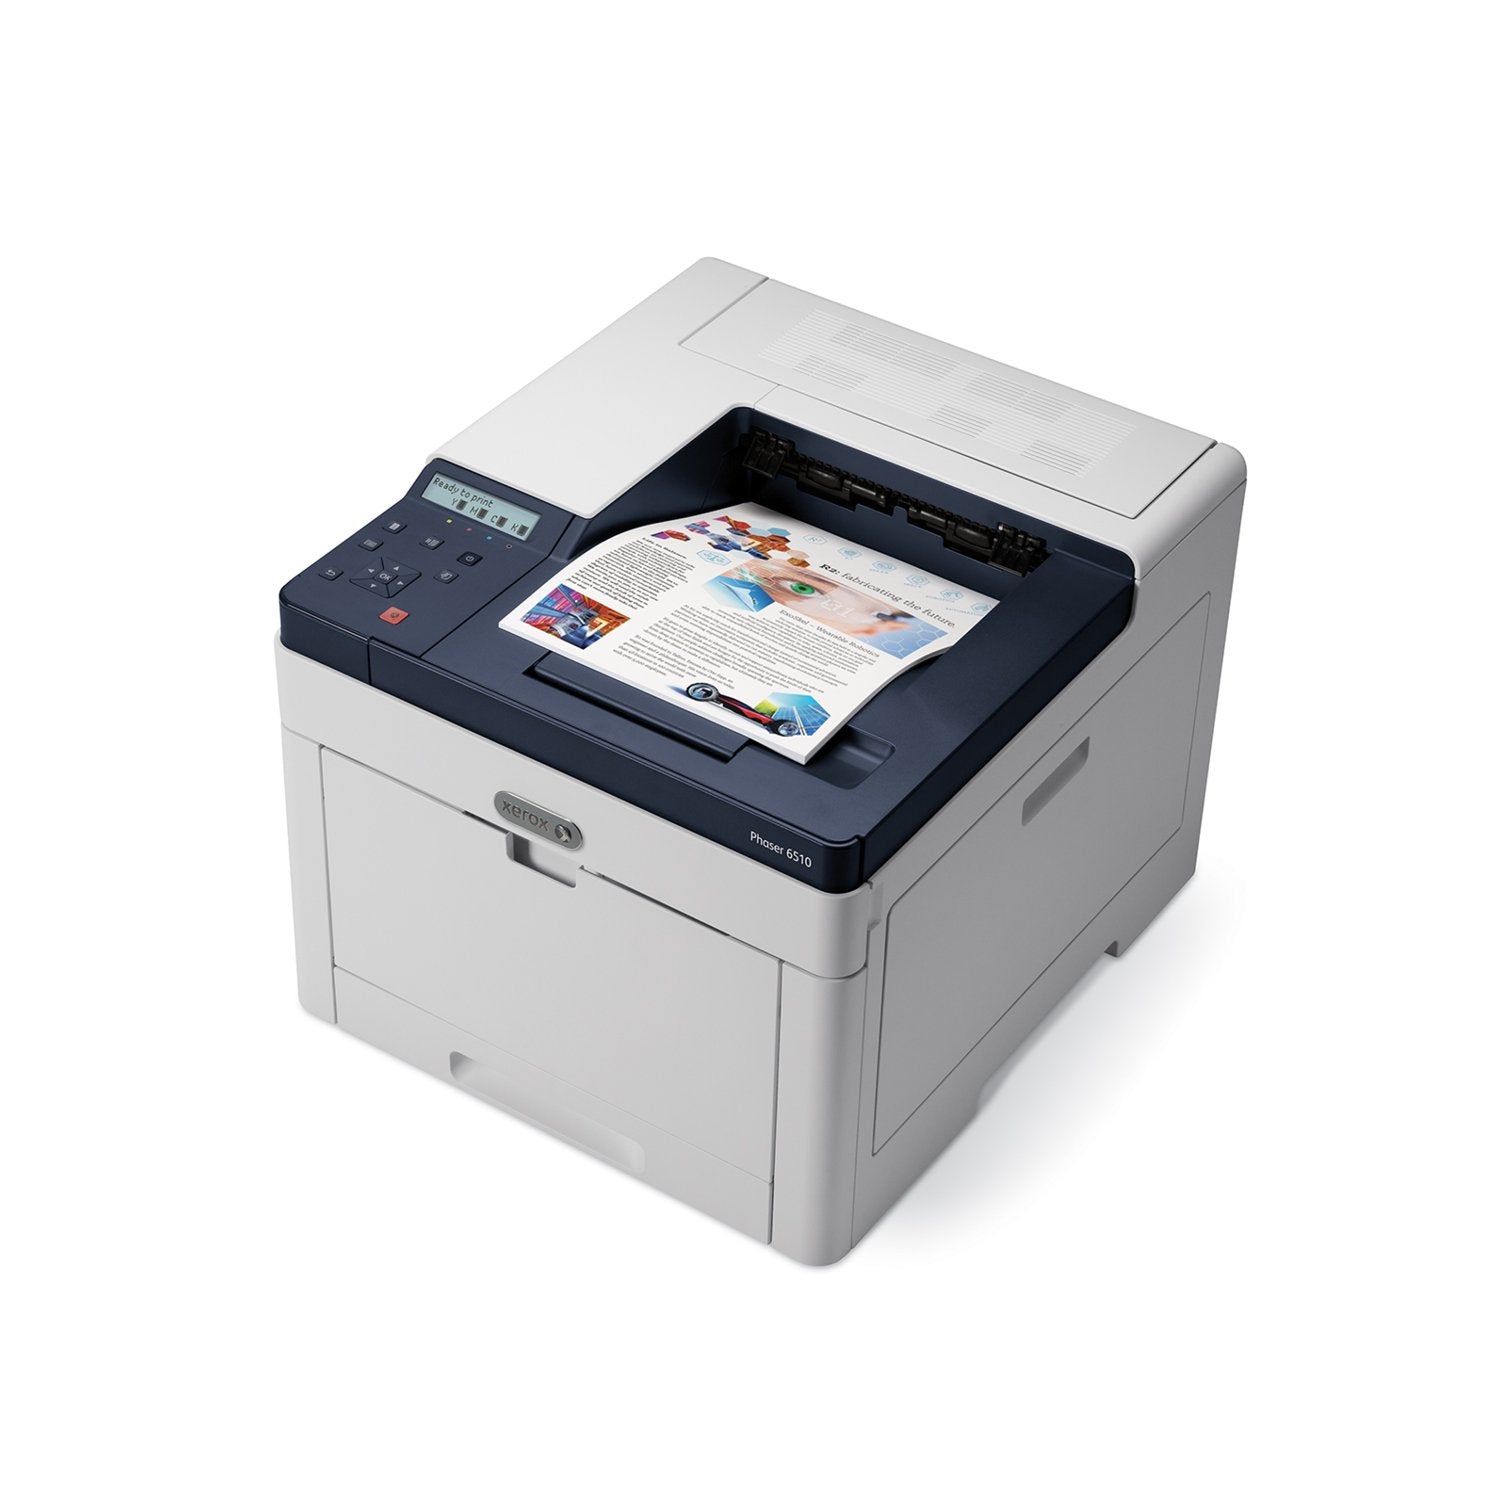 Xerox Phaser 6510N 28 PPM A4 Colour Printer